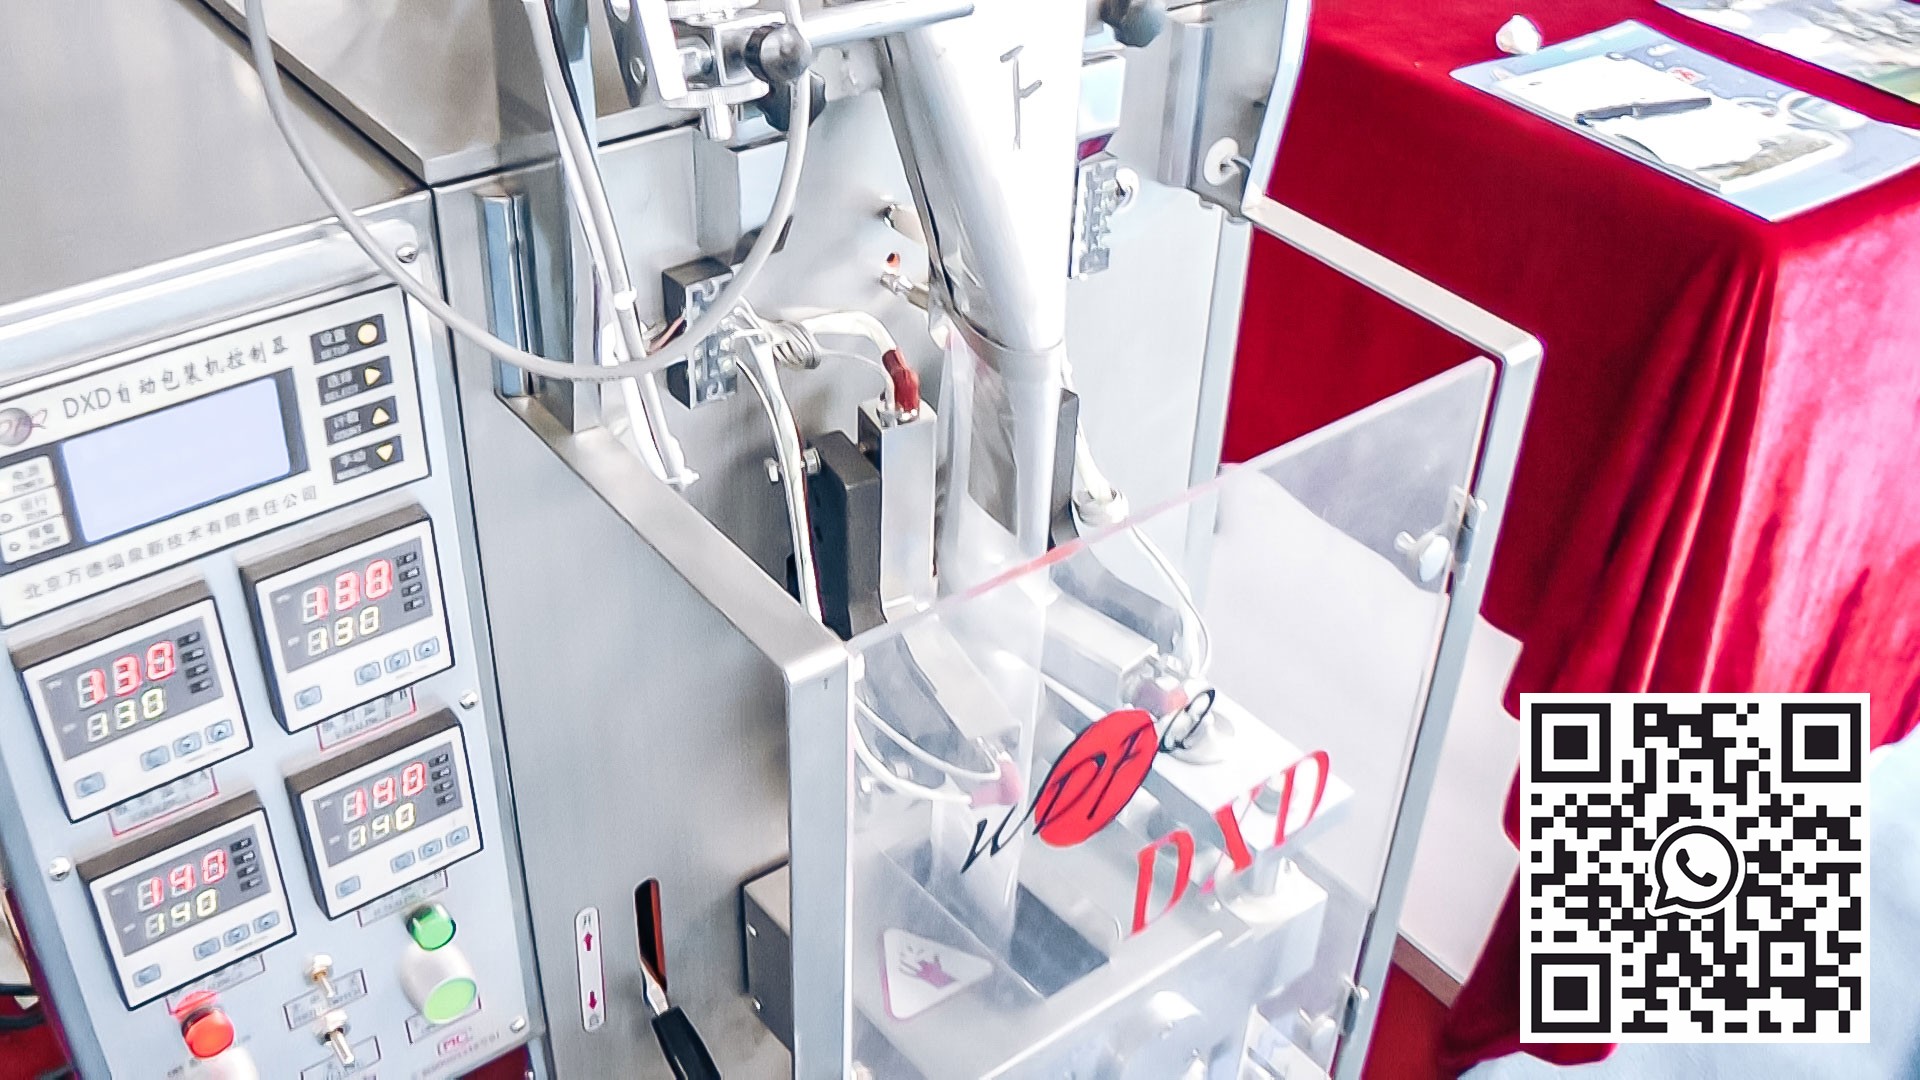 Equipo automático para envasar polvos y gránulos en bolsas de plástico en la producción farmacéutica